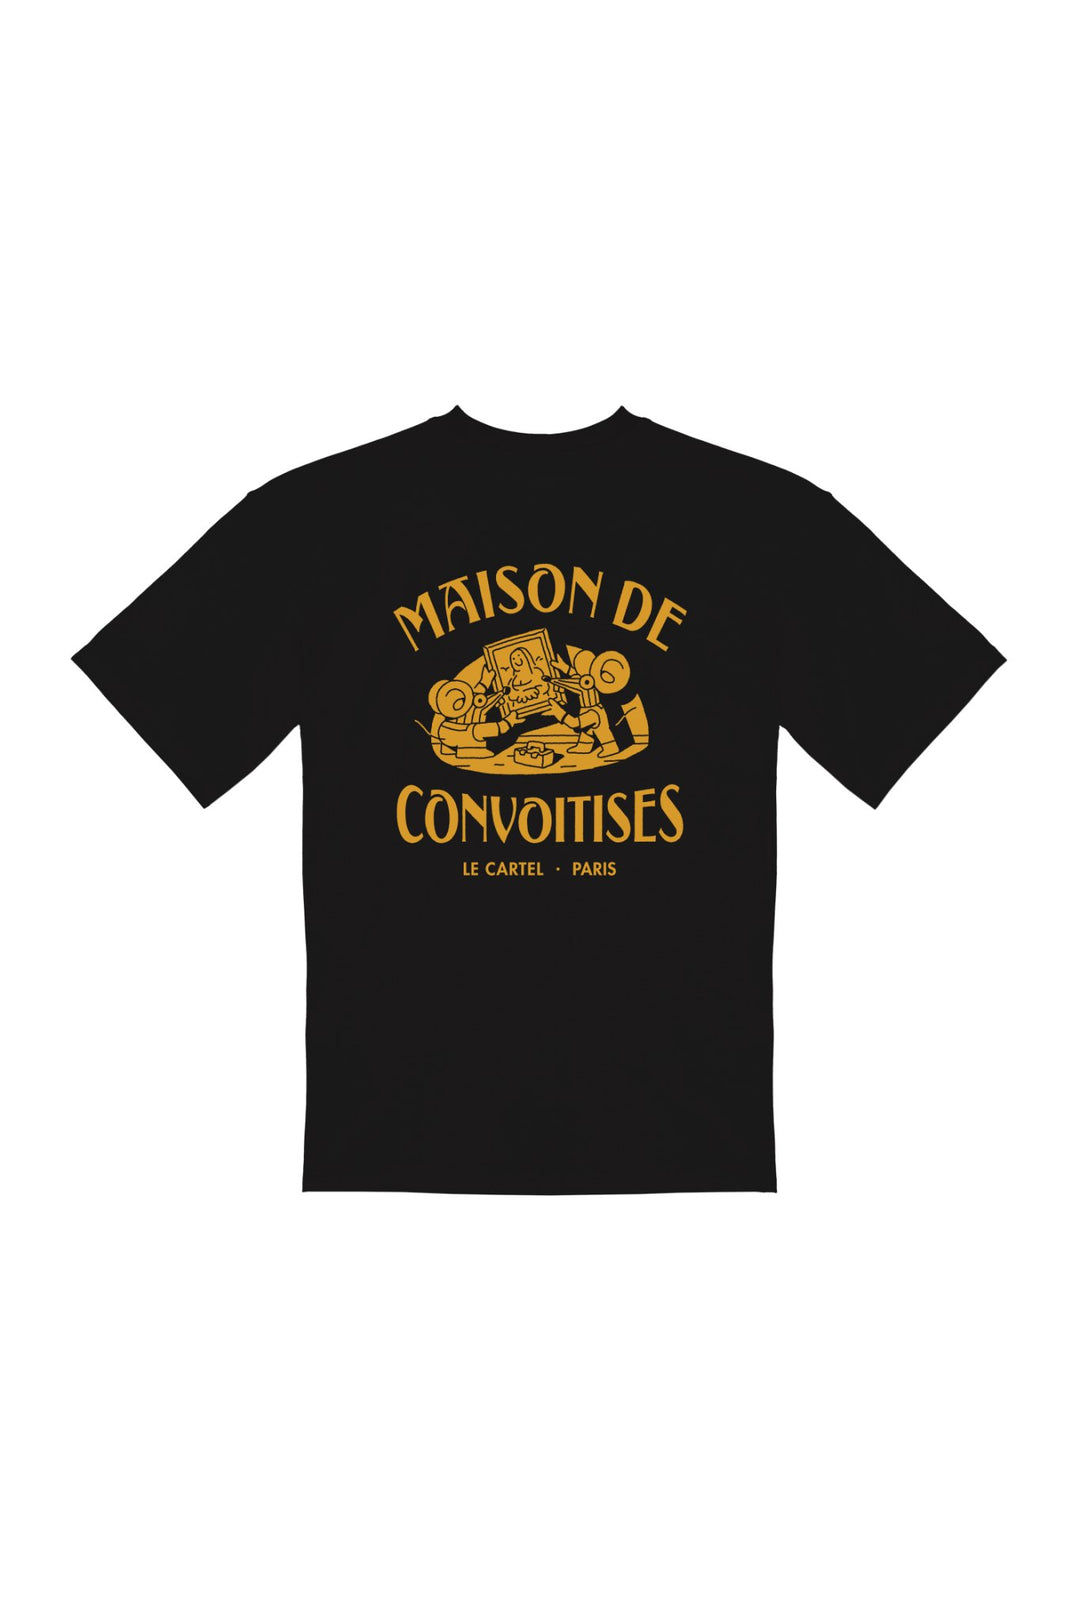 MAISON DE CONVOITISES・T-shirt unisexe・Noir - Le Cartel